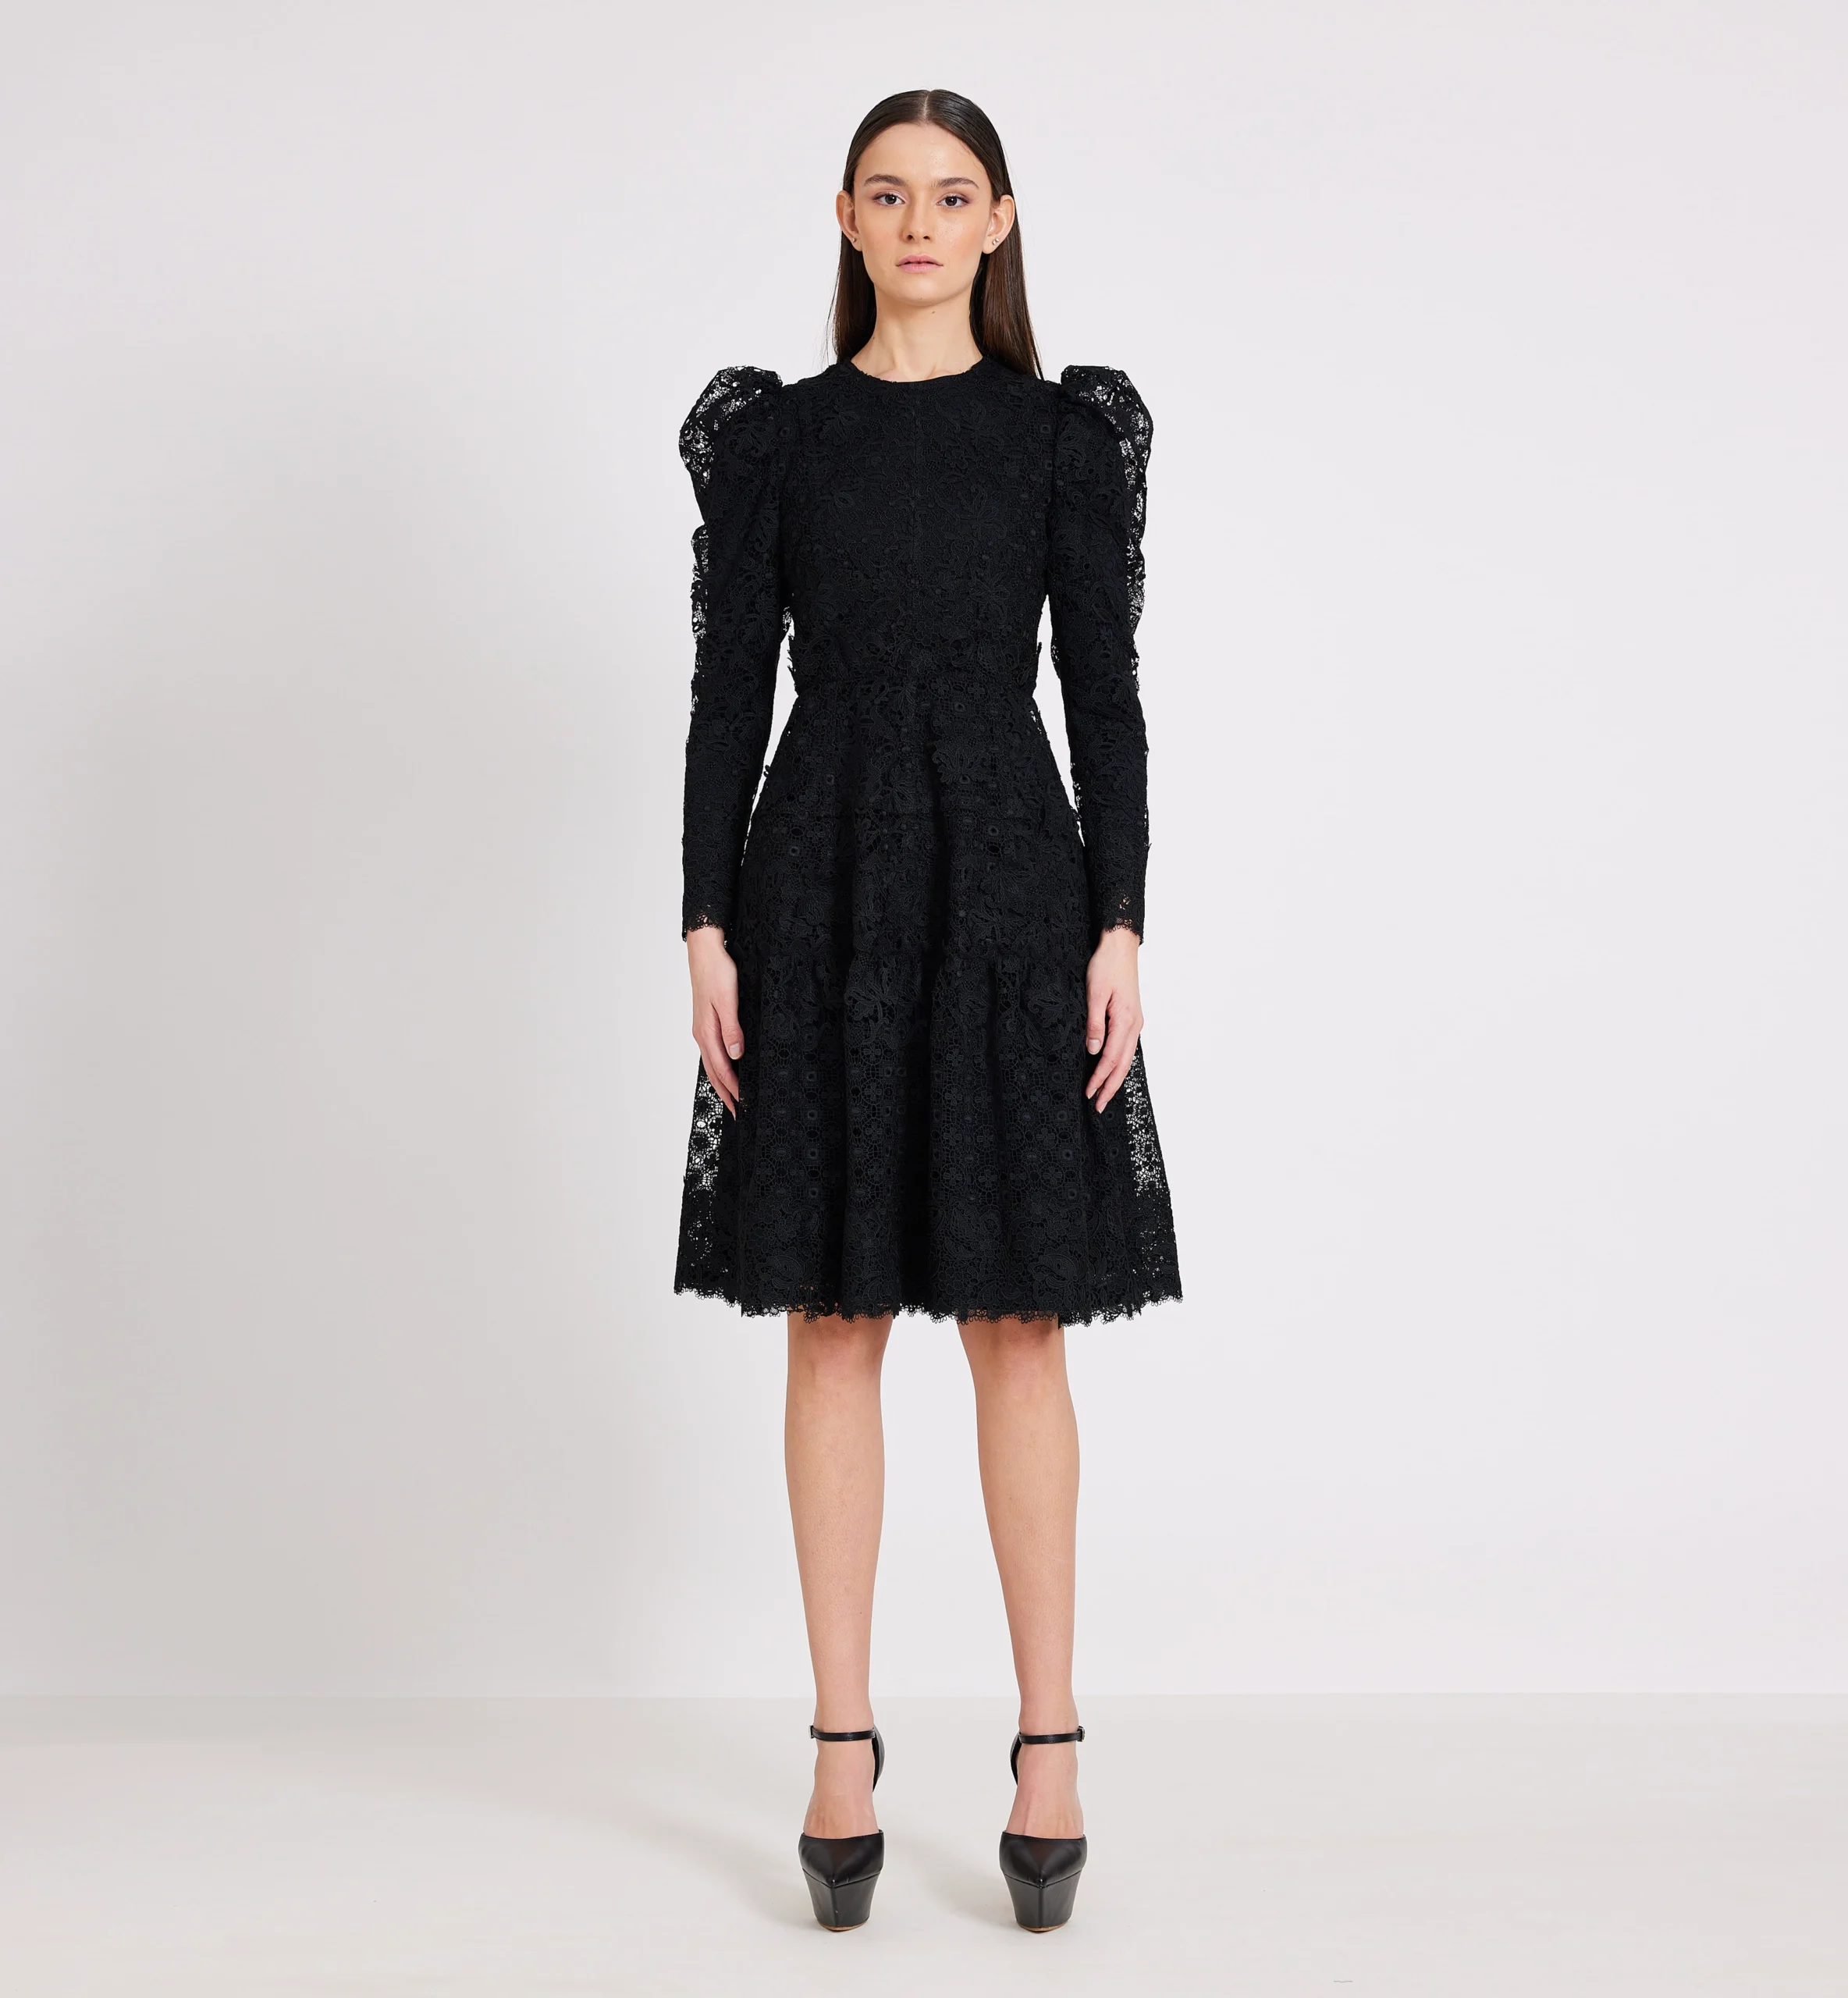 Lace combination dress, black